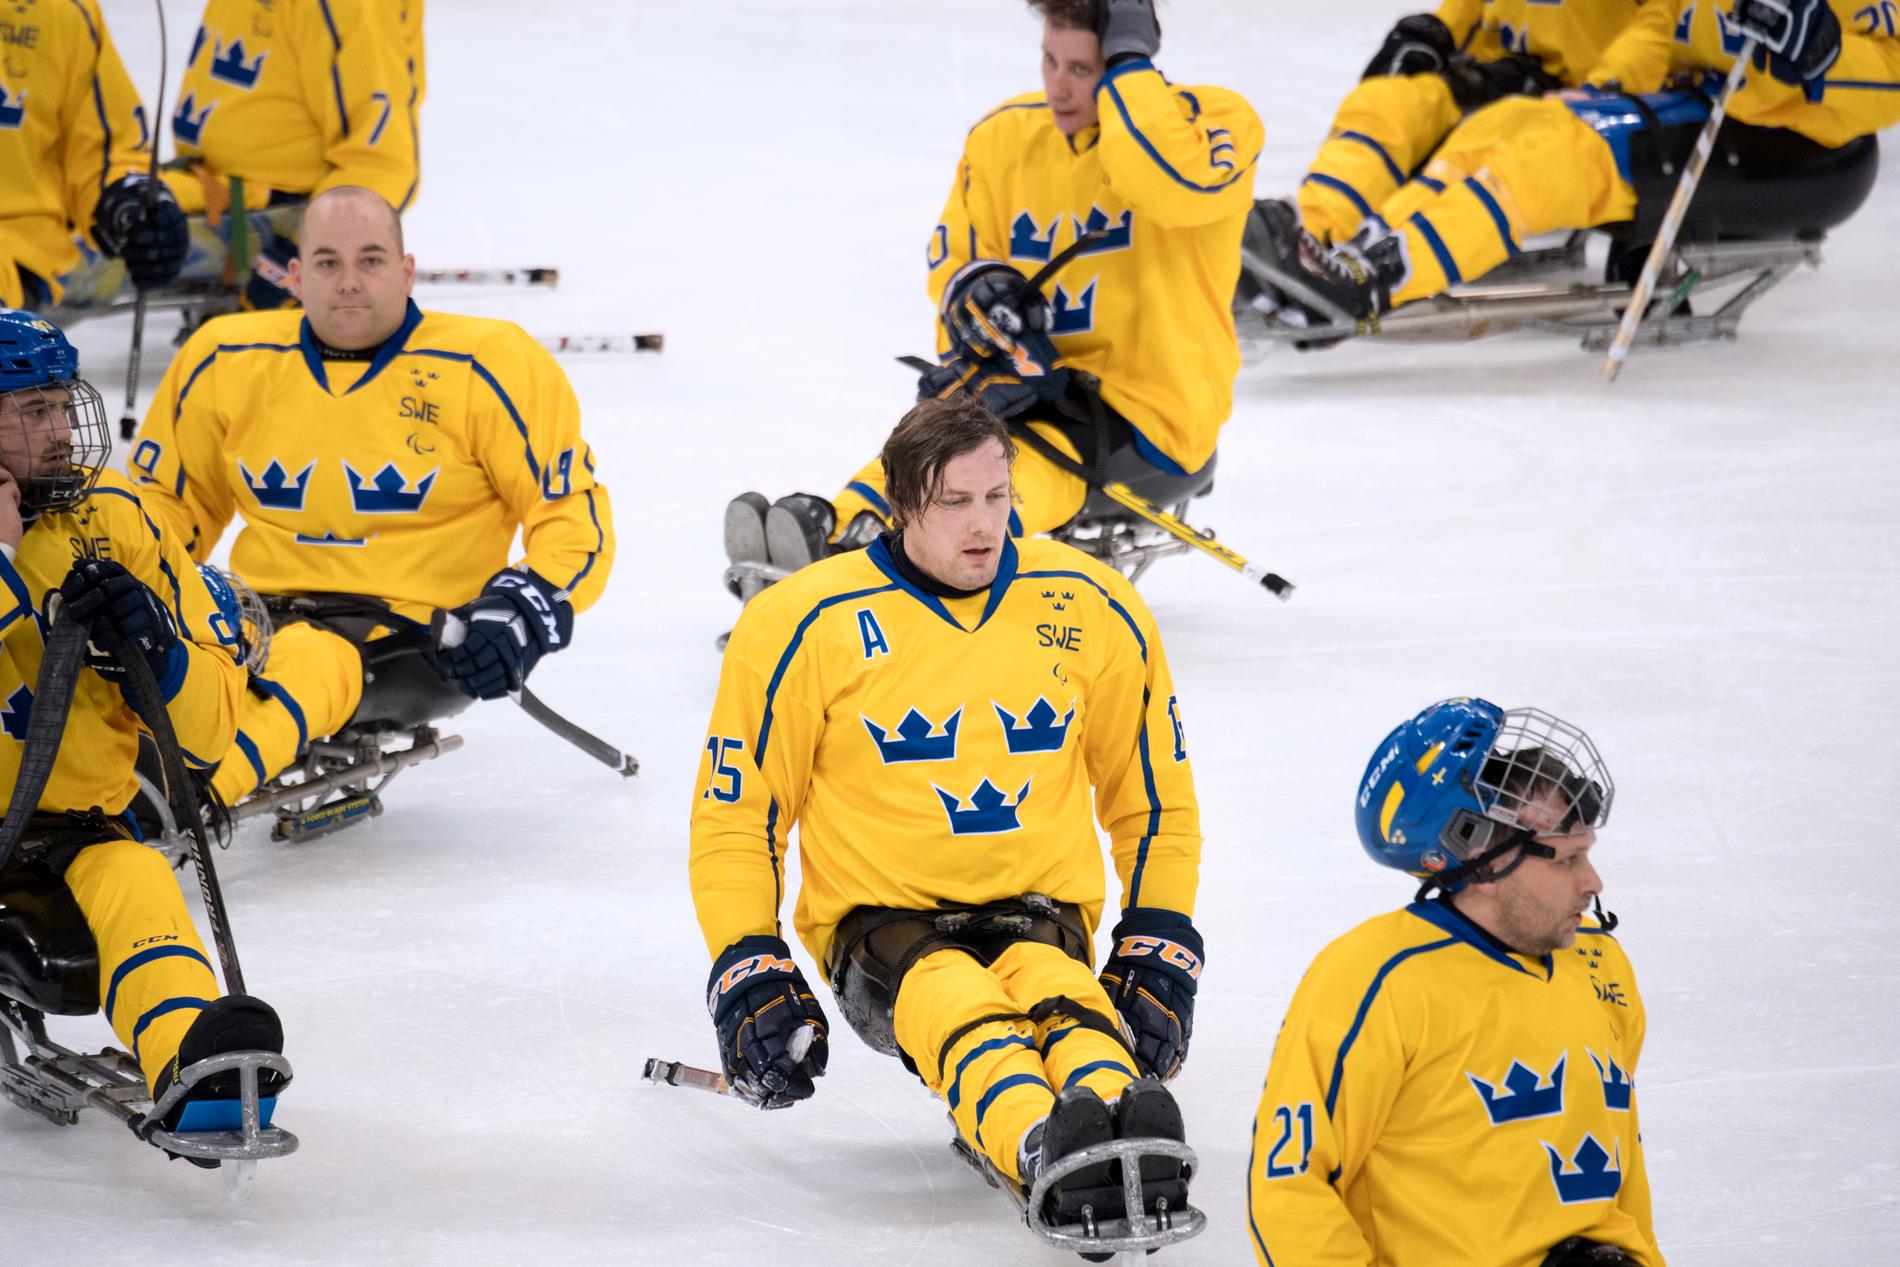 Sveriges kälkhockey-lag i Pyeongchang har inte vunnit en match hittills, och gör upp med Japan om sistaplatsen i hela Paralympics. 